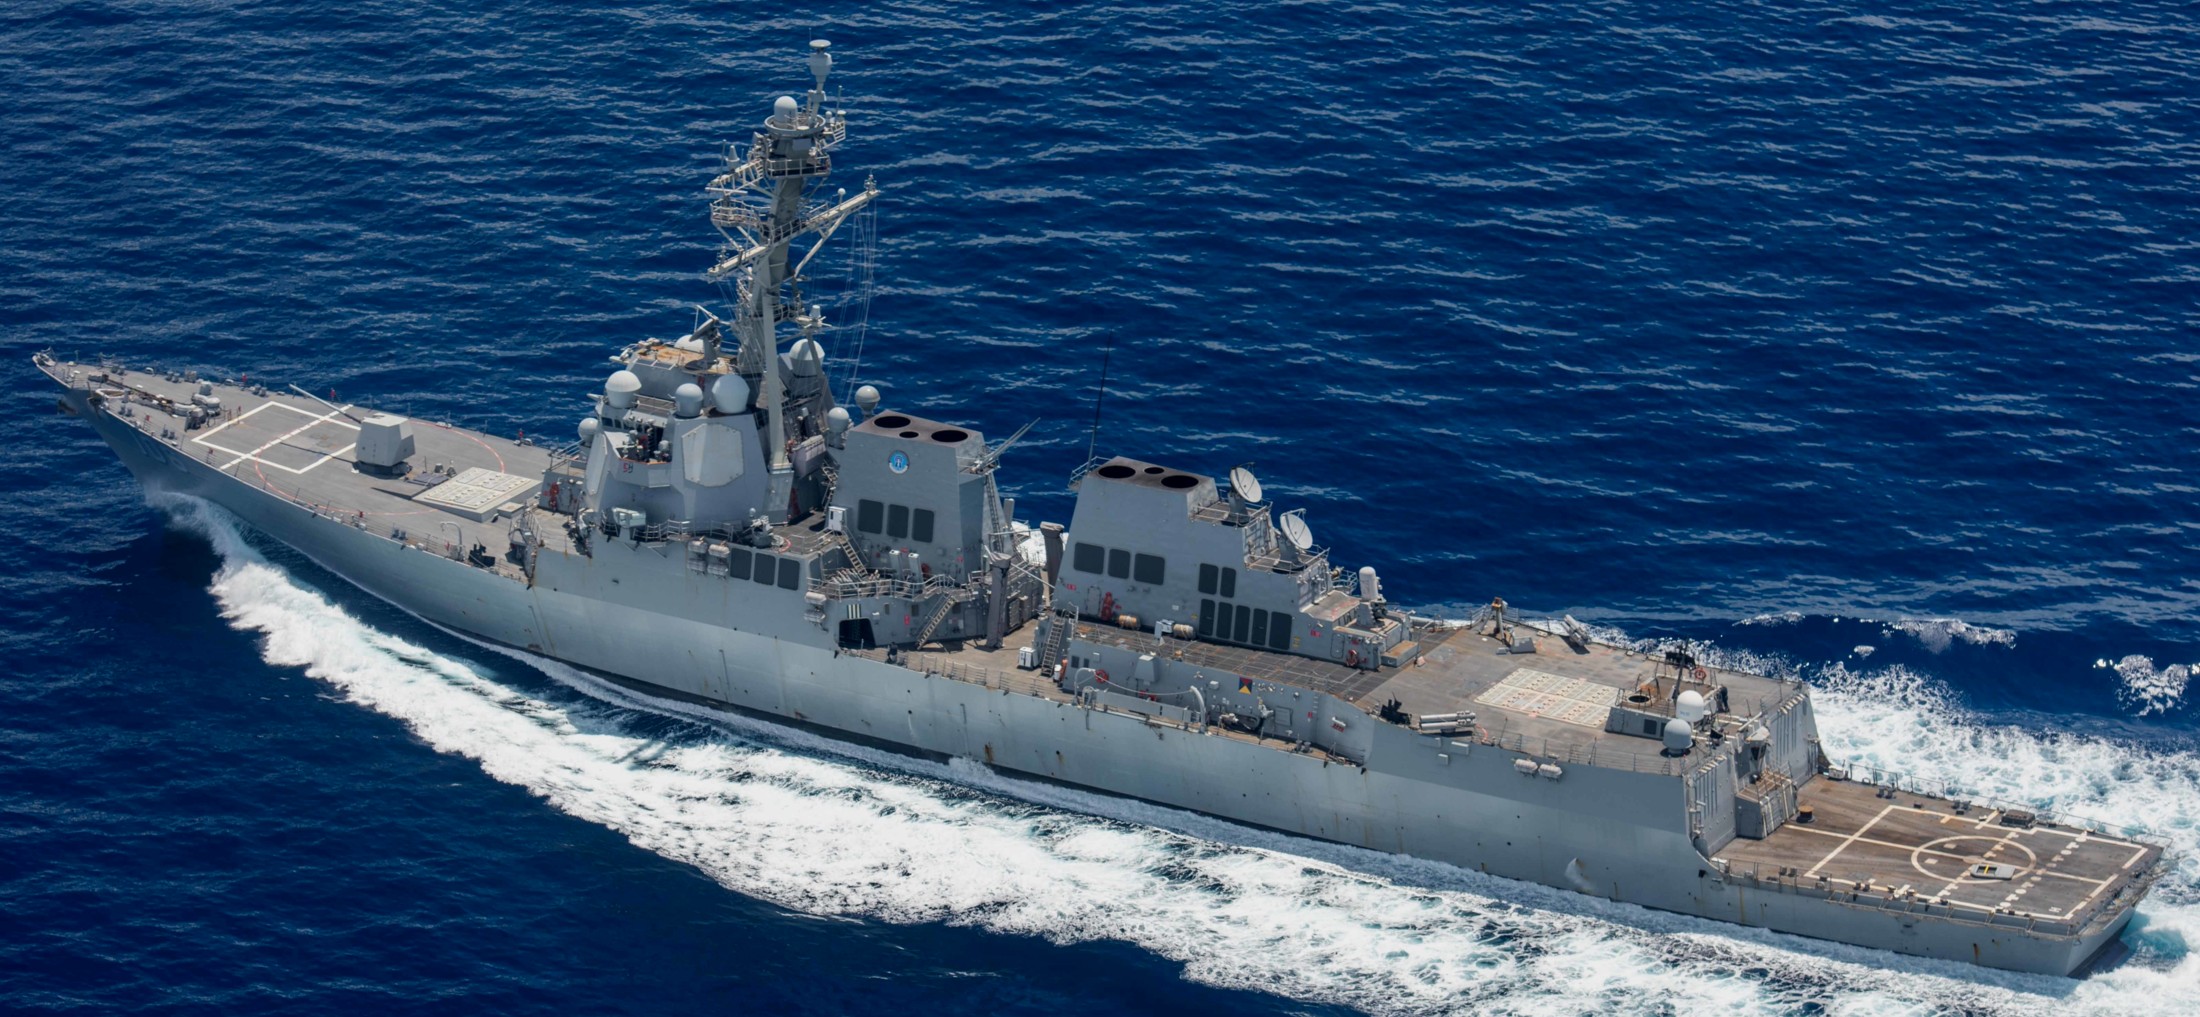 ddg-106 uss stockdale arleigh burke class guided missile destroyer aegis us navy san bernardino strait 141